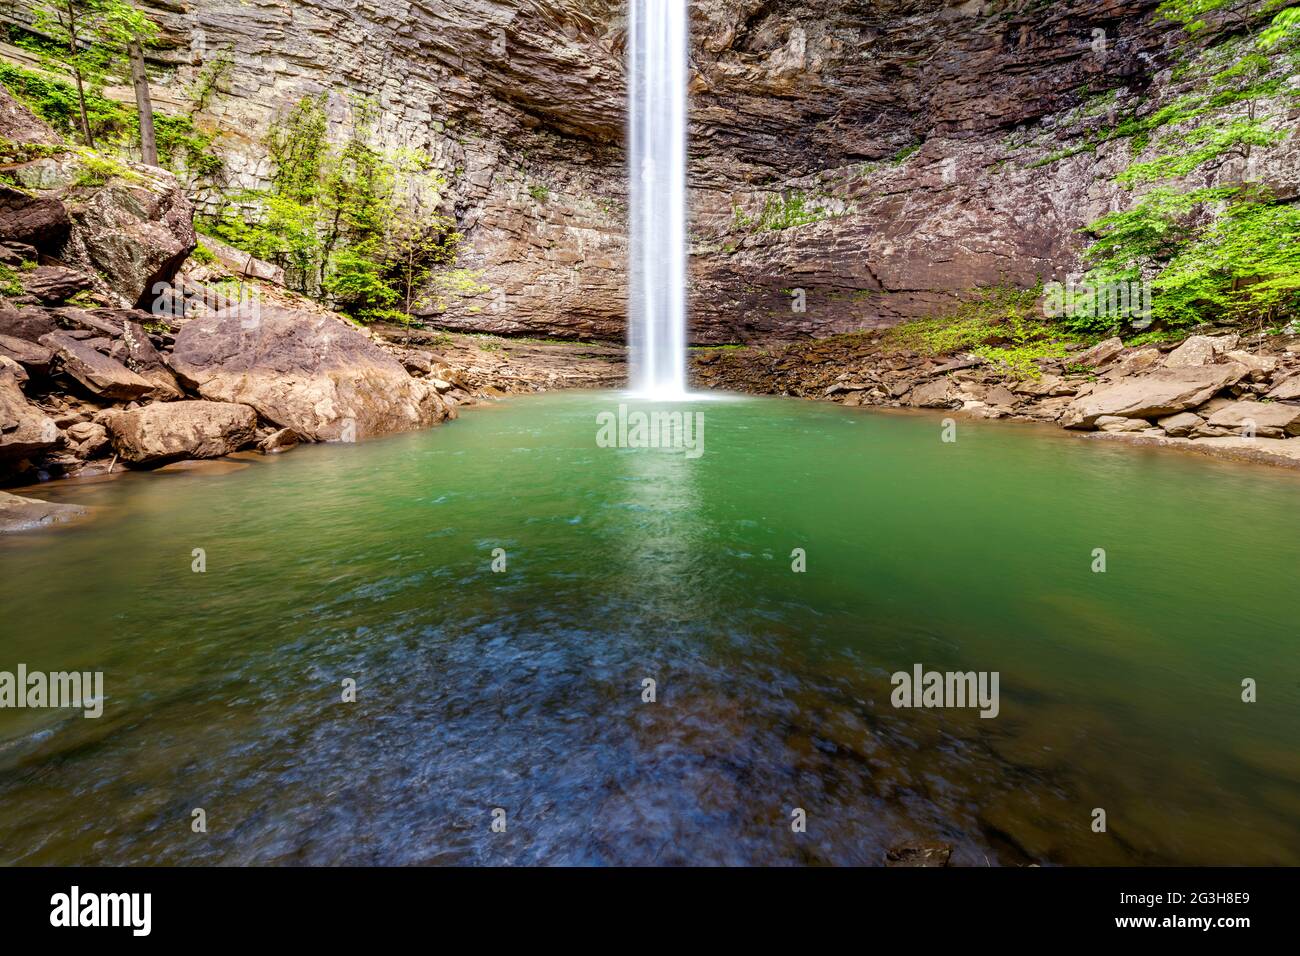 Belles chutes d'ozone dans le comté de Cumberland Tennessee est un trou de baignade rafraîchissant avec une cascade fraîche qui alimente la piscine. Banque D'Images